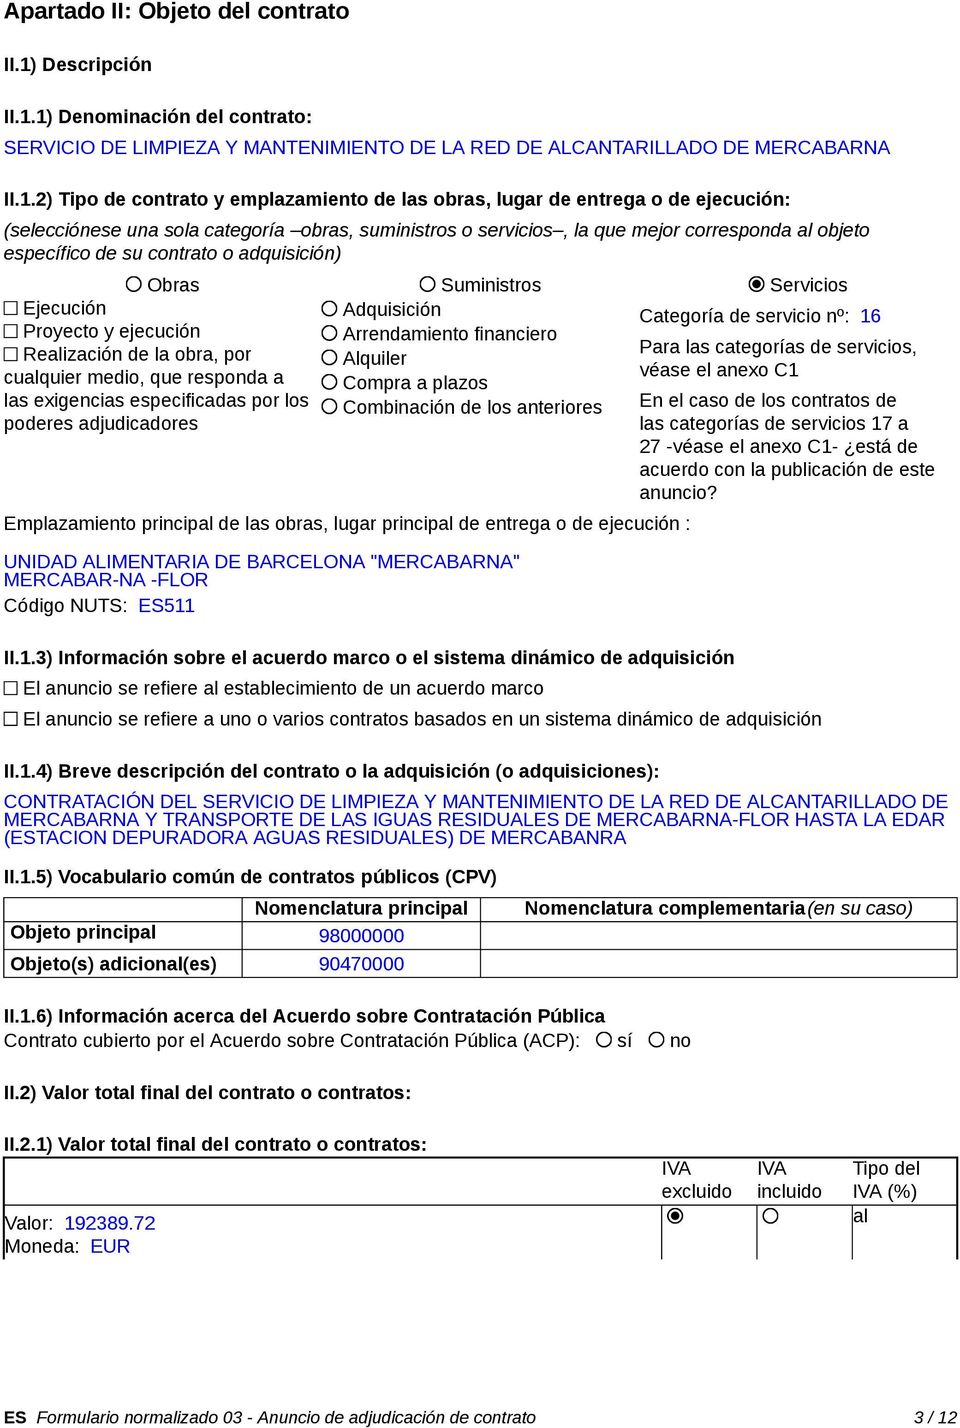 1) Denominación del contrato: SERVICIO DE LIMPIEZA Y MANTENIMIENTO DE LA RED DE ALCANTARILLADO DE MERCABARNA II.1.2) Tipo de contrato y emplazamiento de las obras, lugar de entrega o de ejecución: